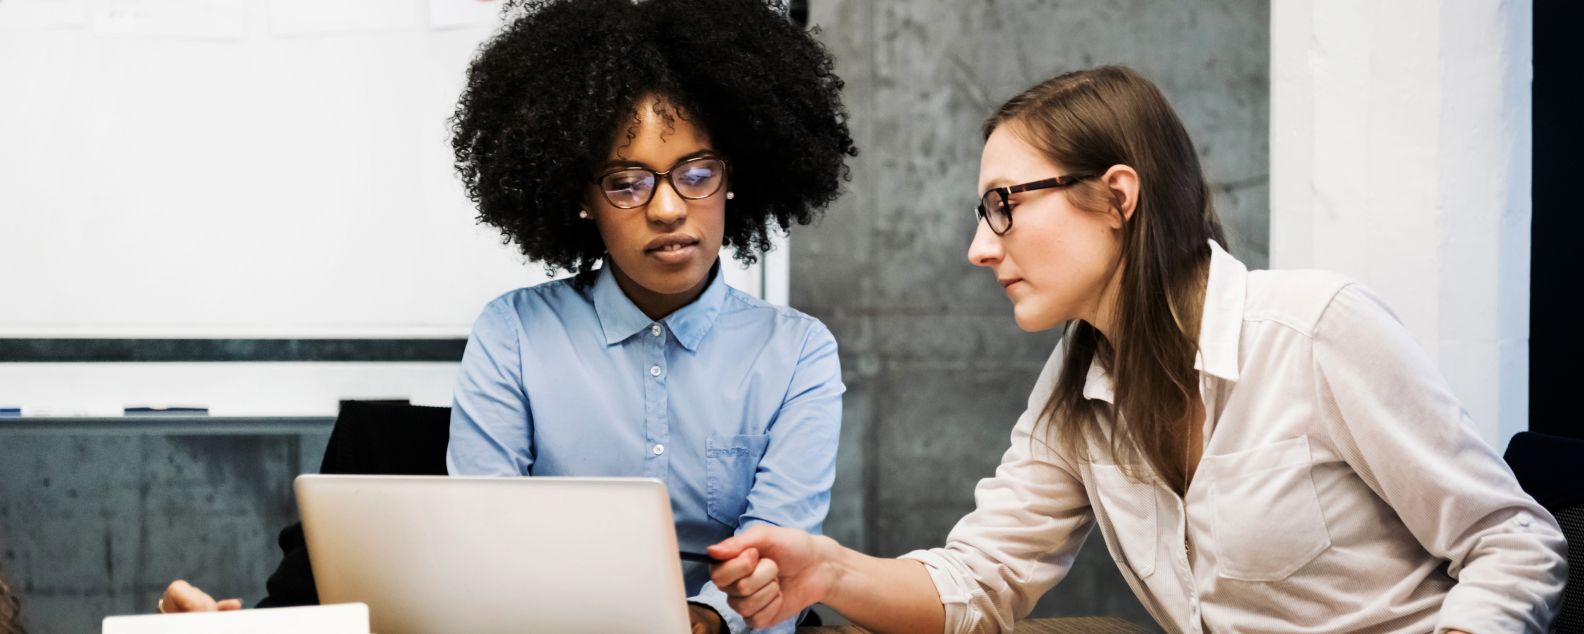 Une jeune femme noire et une jeune femme blanche participent à une réunion de travail dans un bureau moderne. Elles discutent au milieu de papiers avec un ordinateur portable. L’une d’entre elles pointe l’écran du doigt. Les deux portent des lunettes. Des graphiques circulaires sont visibles en arrière-plan.